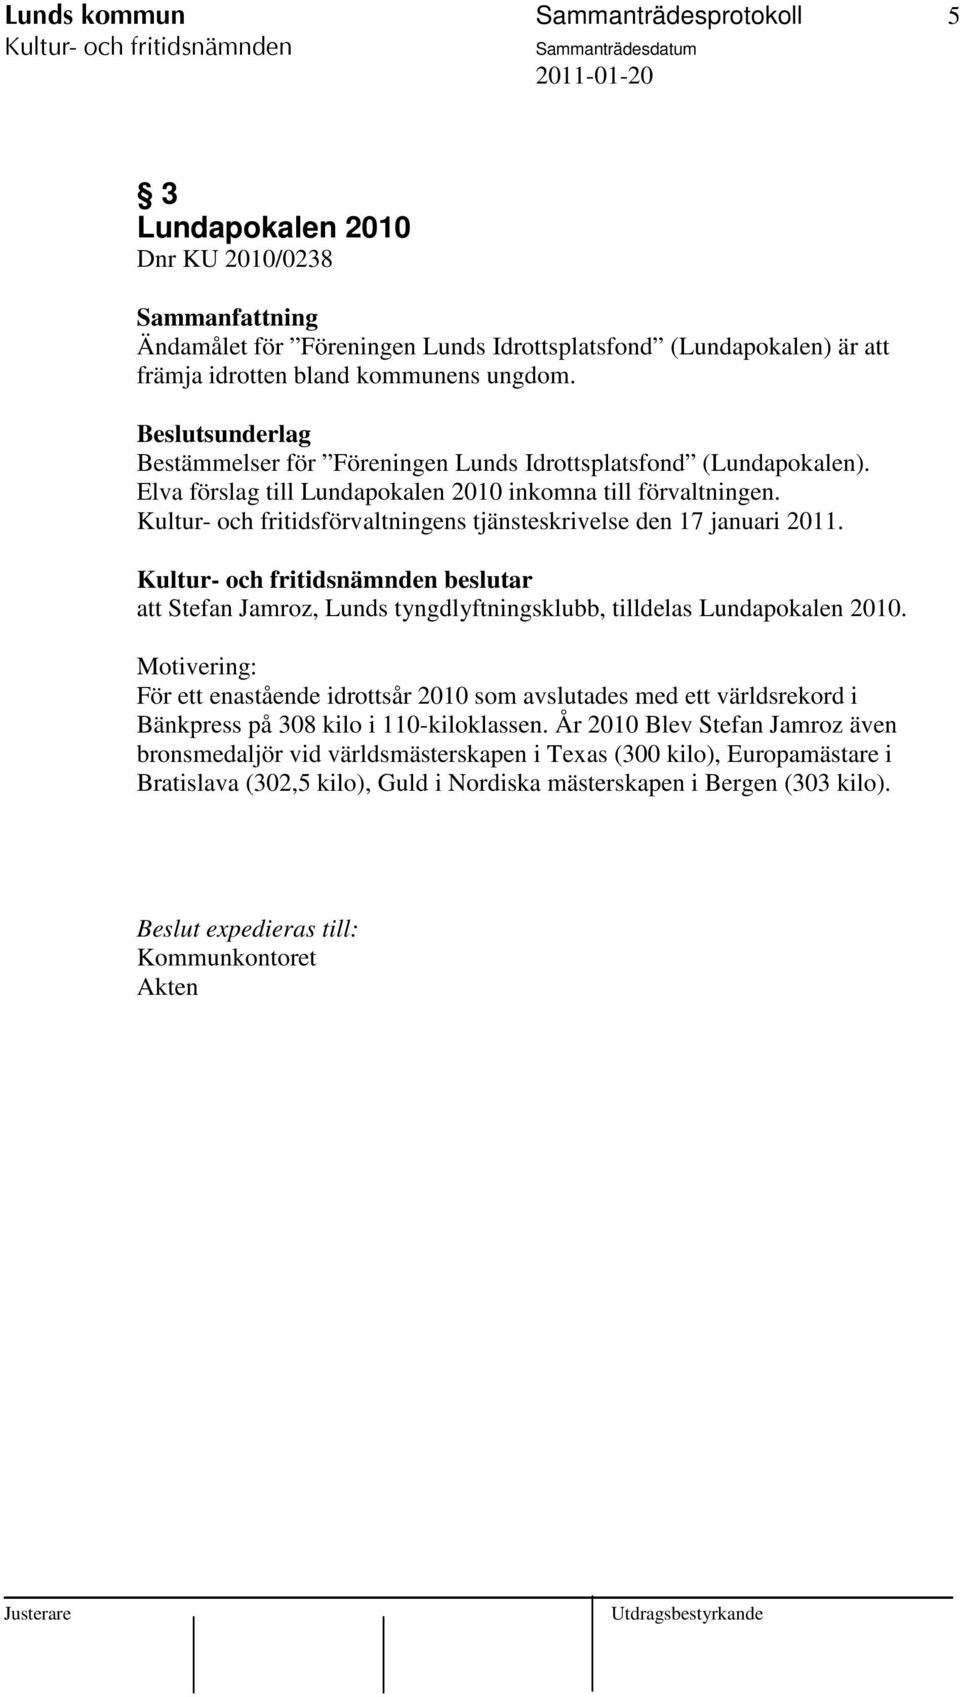 Kultur- och fritidsförvaltningens tjänsteskrivelse den 17 januari 2011. beslutar att Stefan Jamroz, Lunds tyngdlyftningsklubb, tilldelas Lundapokalen 2010.